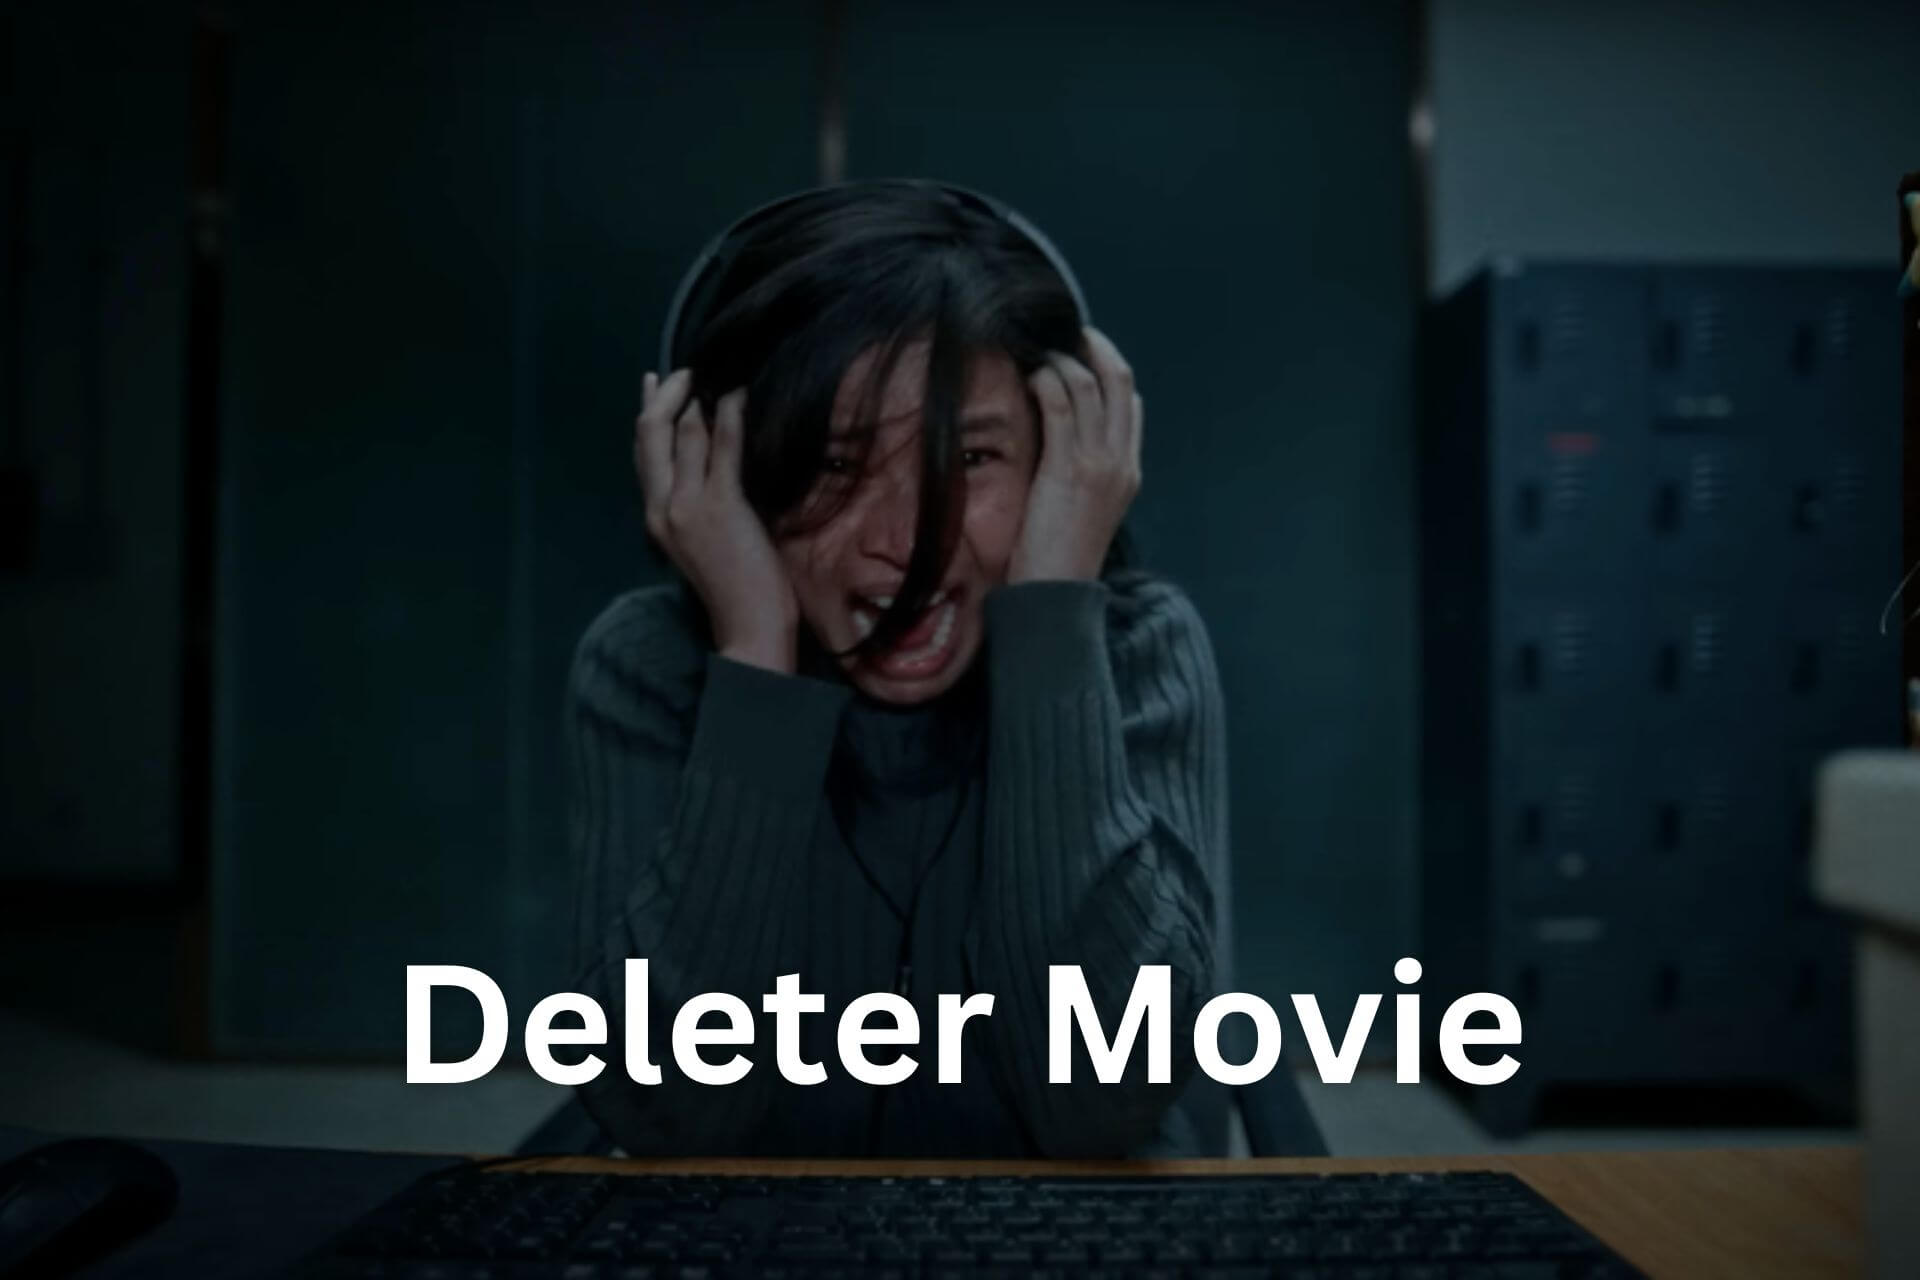 Deleter Movie